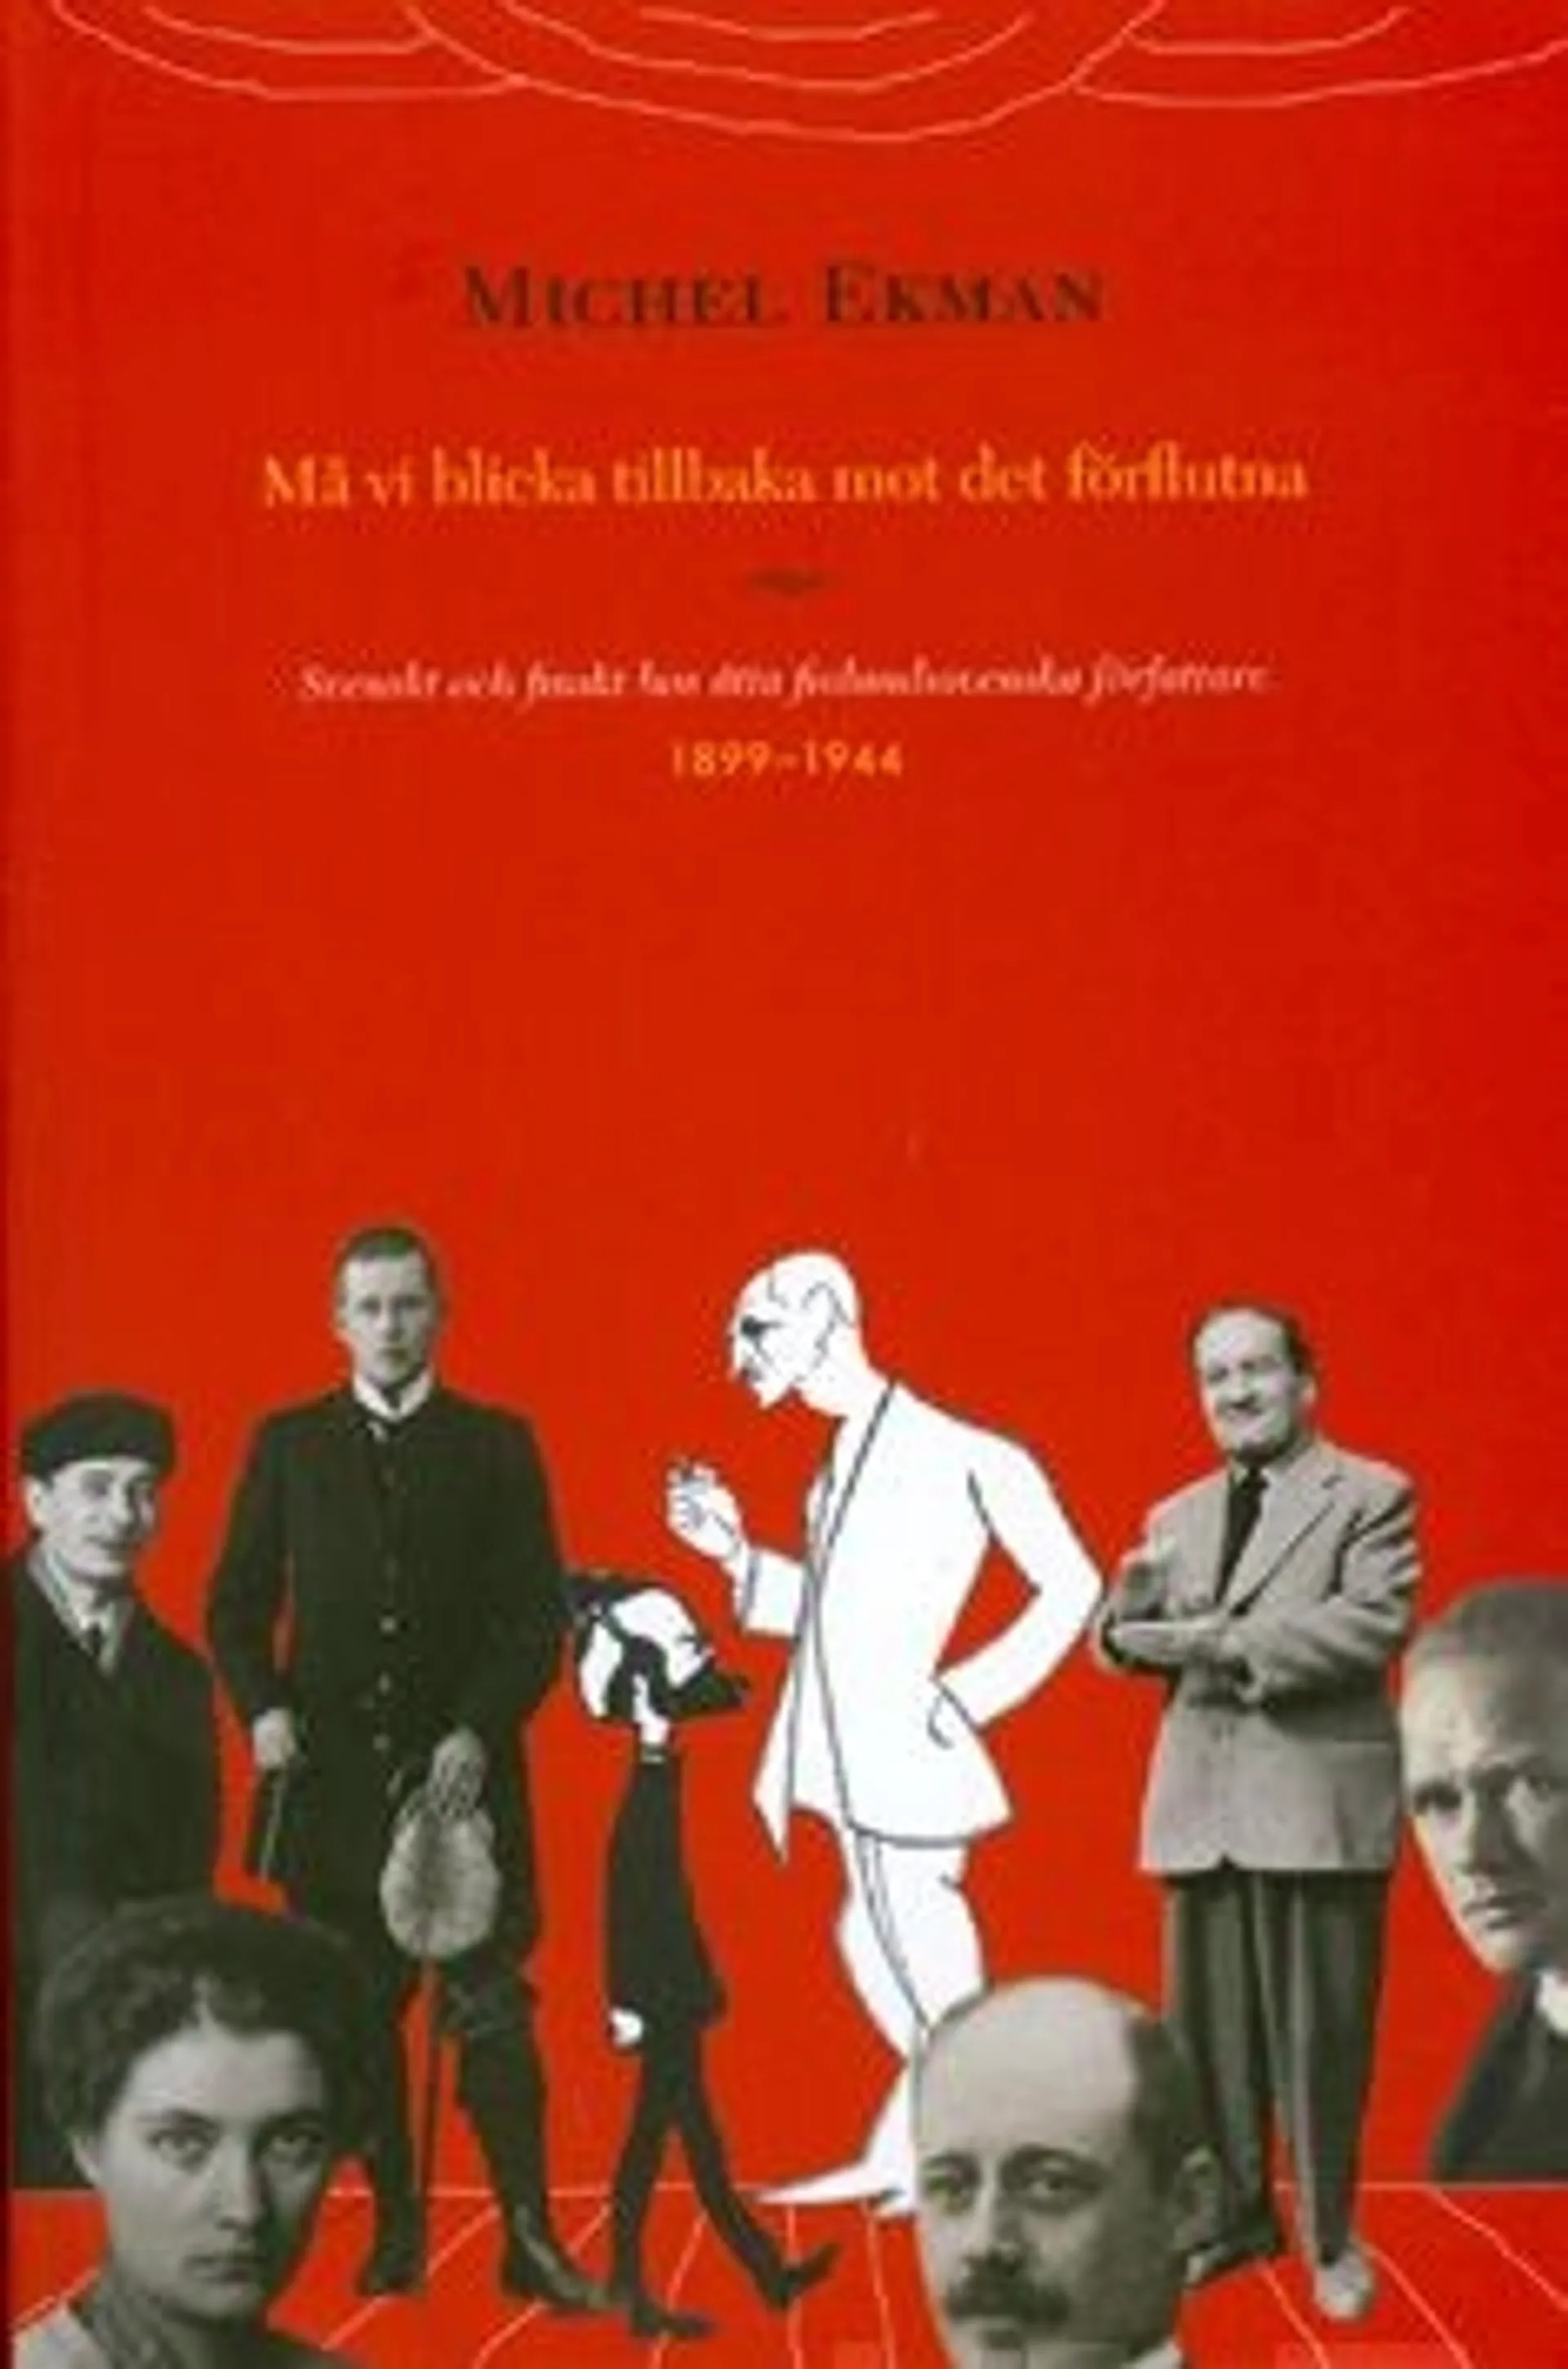 Ekman, Må vi blicka tillbaka mot det förlutna - svenskt och finskt hos åtta finlandssvenska författare 1899-1944